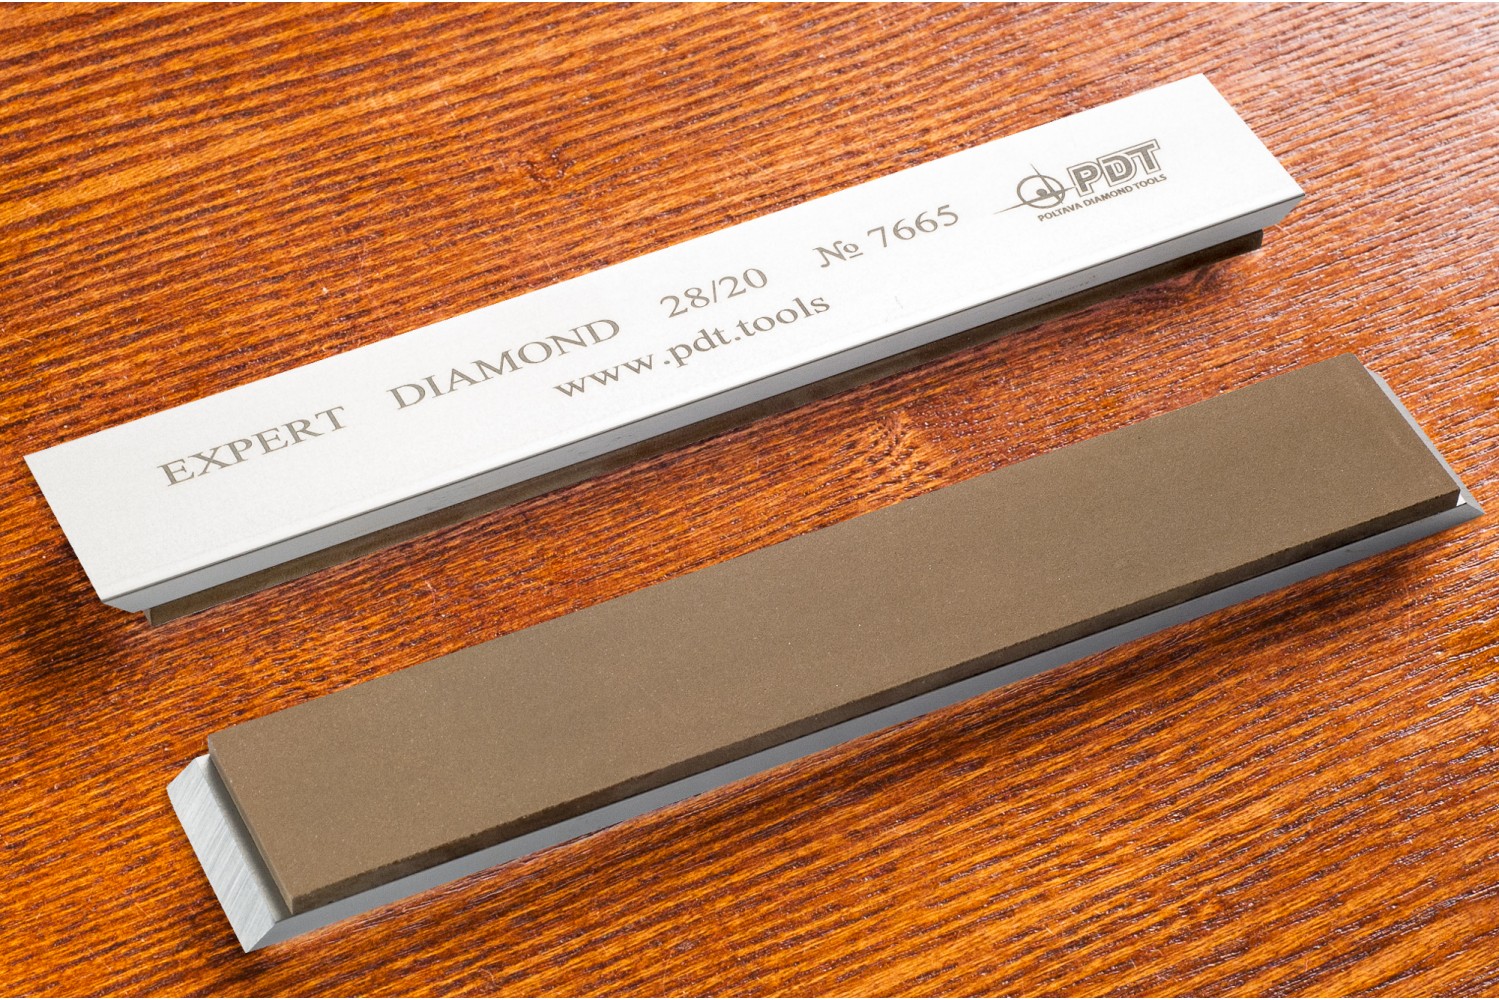 Алмазный брусок для заточки PDT EXPERT 150-25-3мм 28/20 мкм на алюминиевом бланке запасной точильный модуль для ножей с углом заточки 20 градусов к электрическому станку chef schoice 2100